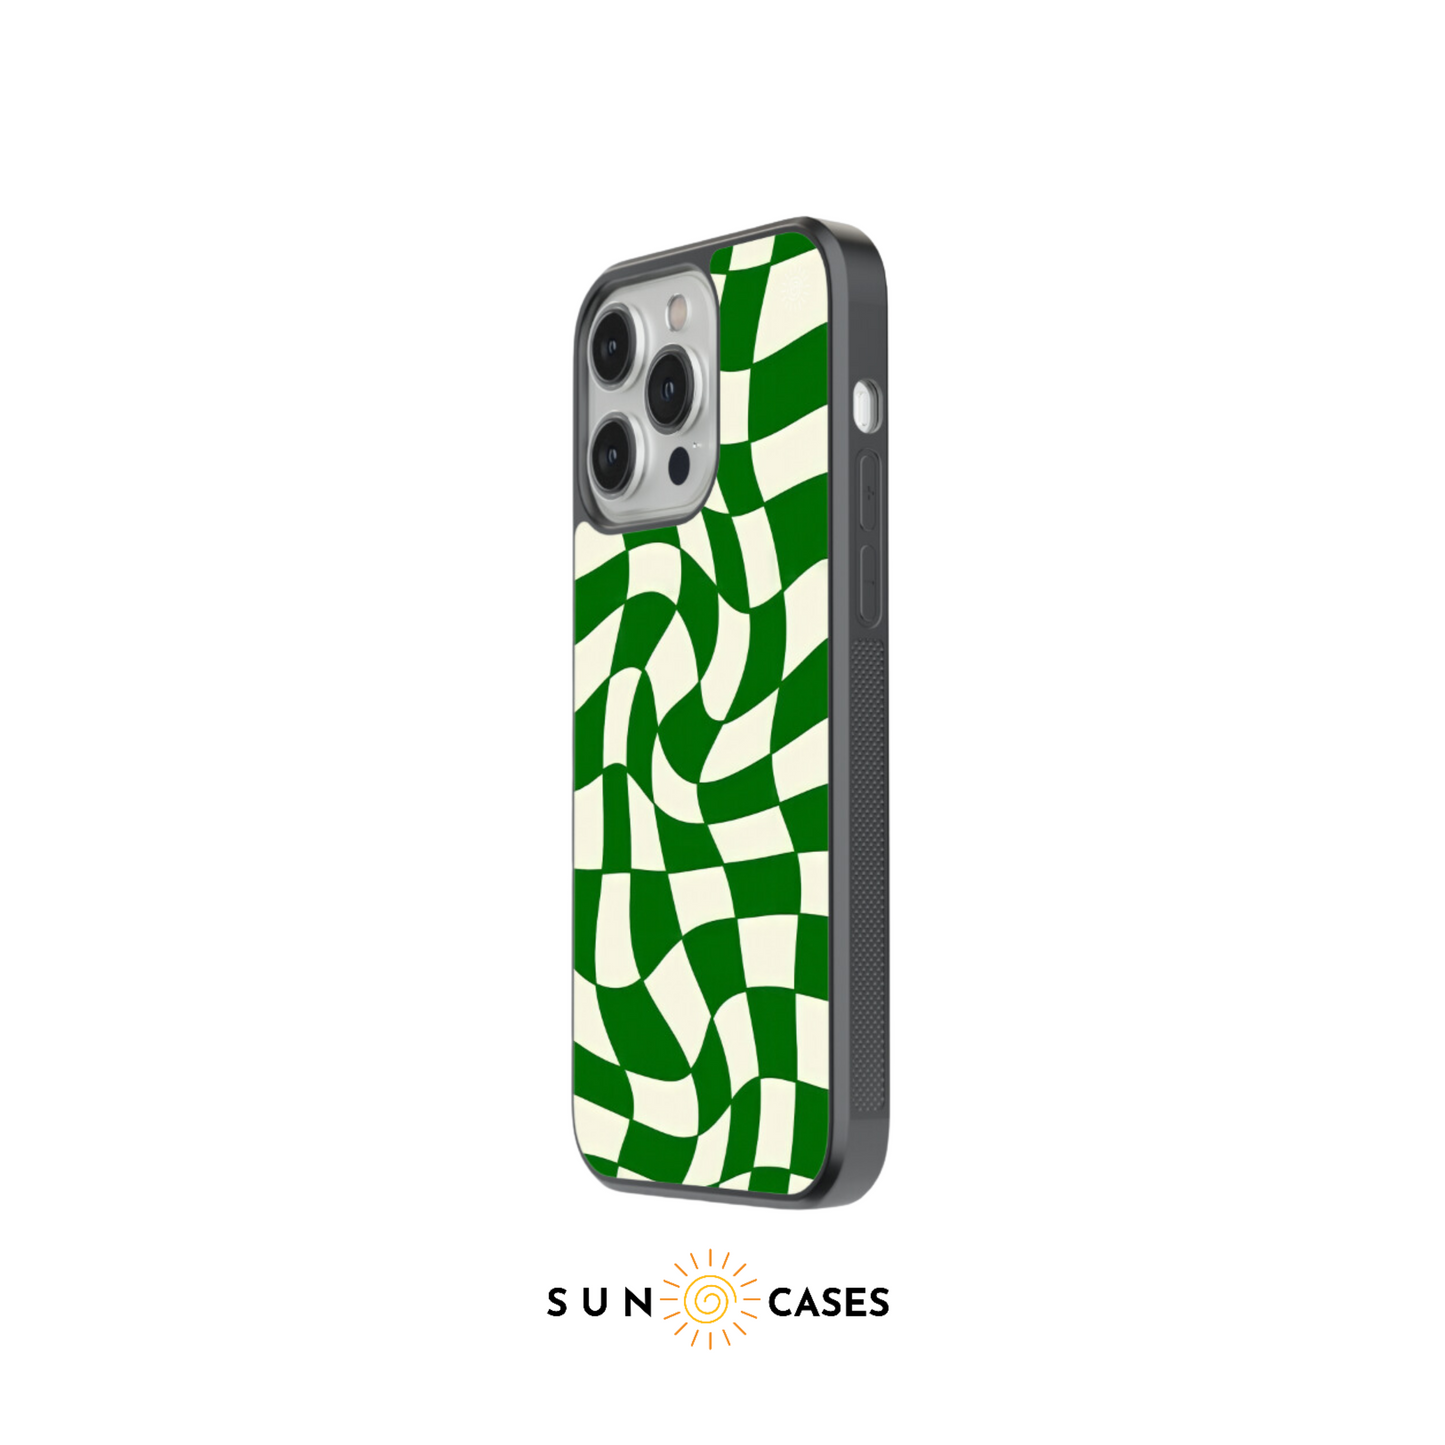 Checkered Case -  Green Checkered